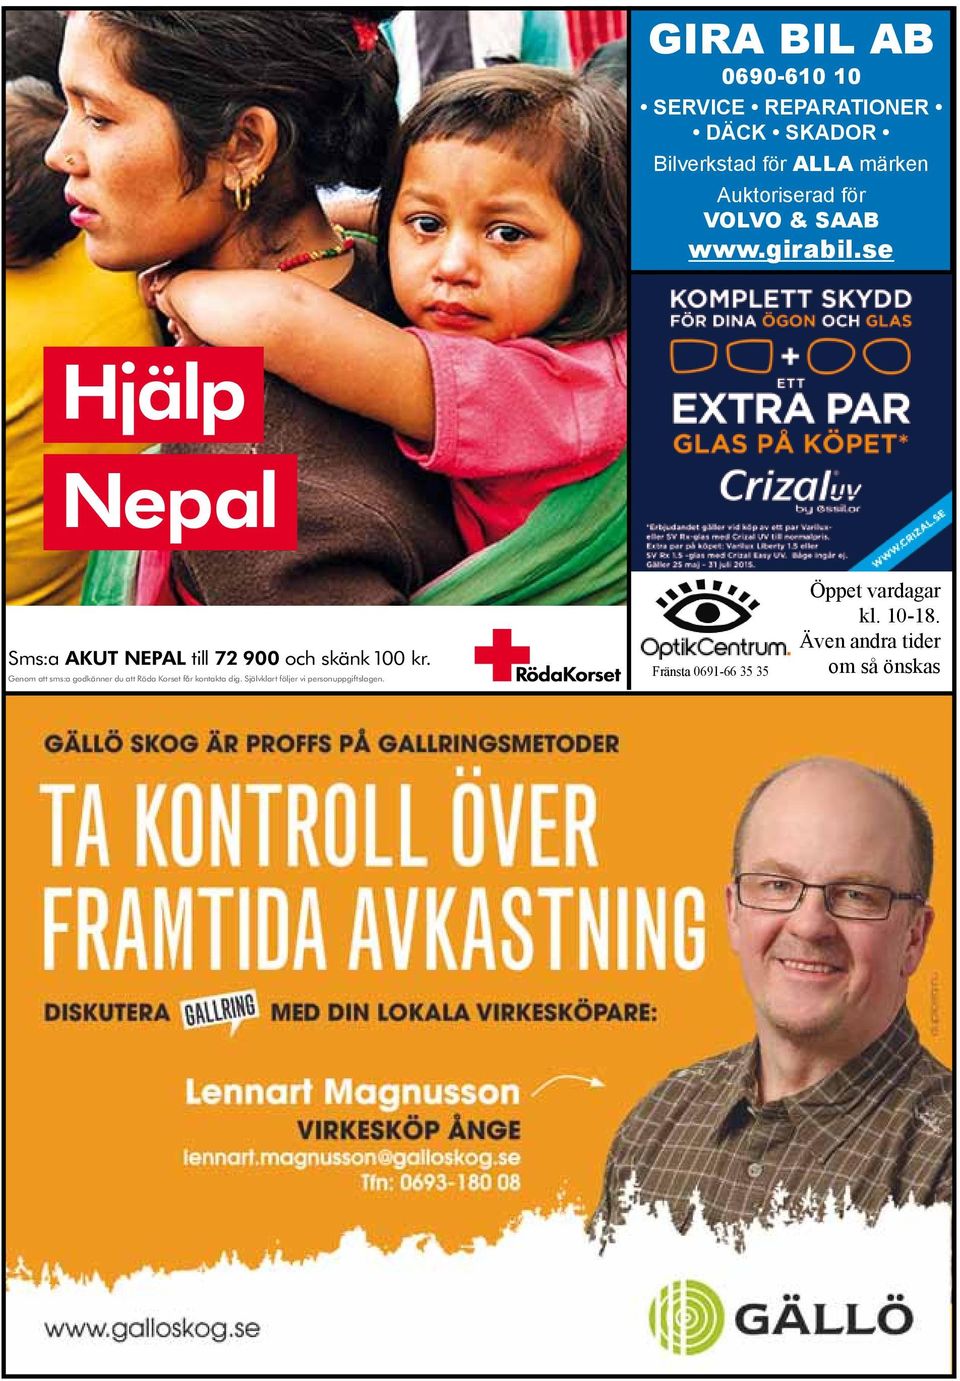 se Hjälp Nepal Sms:a AKUT NEPAL till 72 900 och skänk 100 kr.